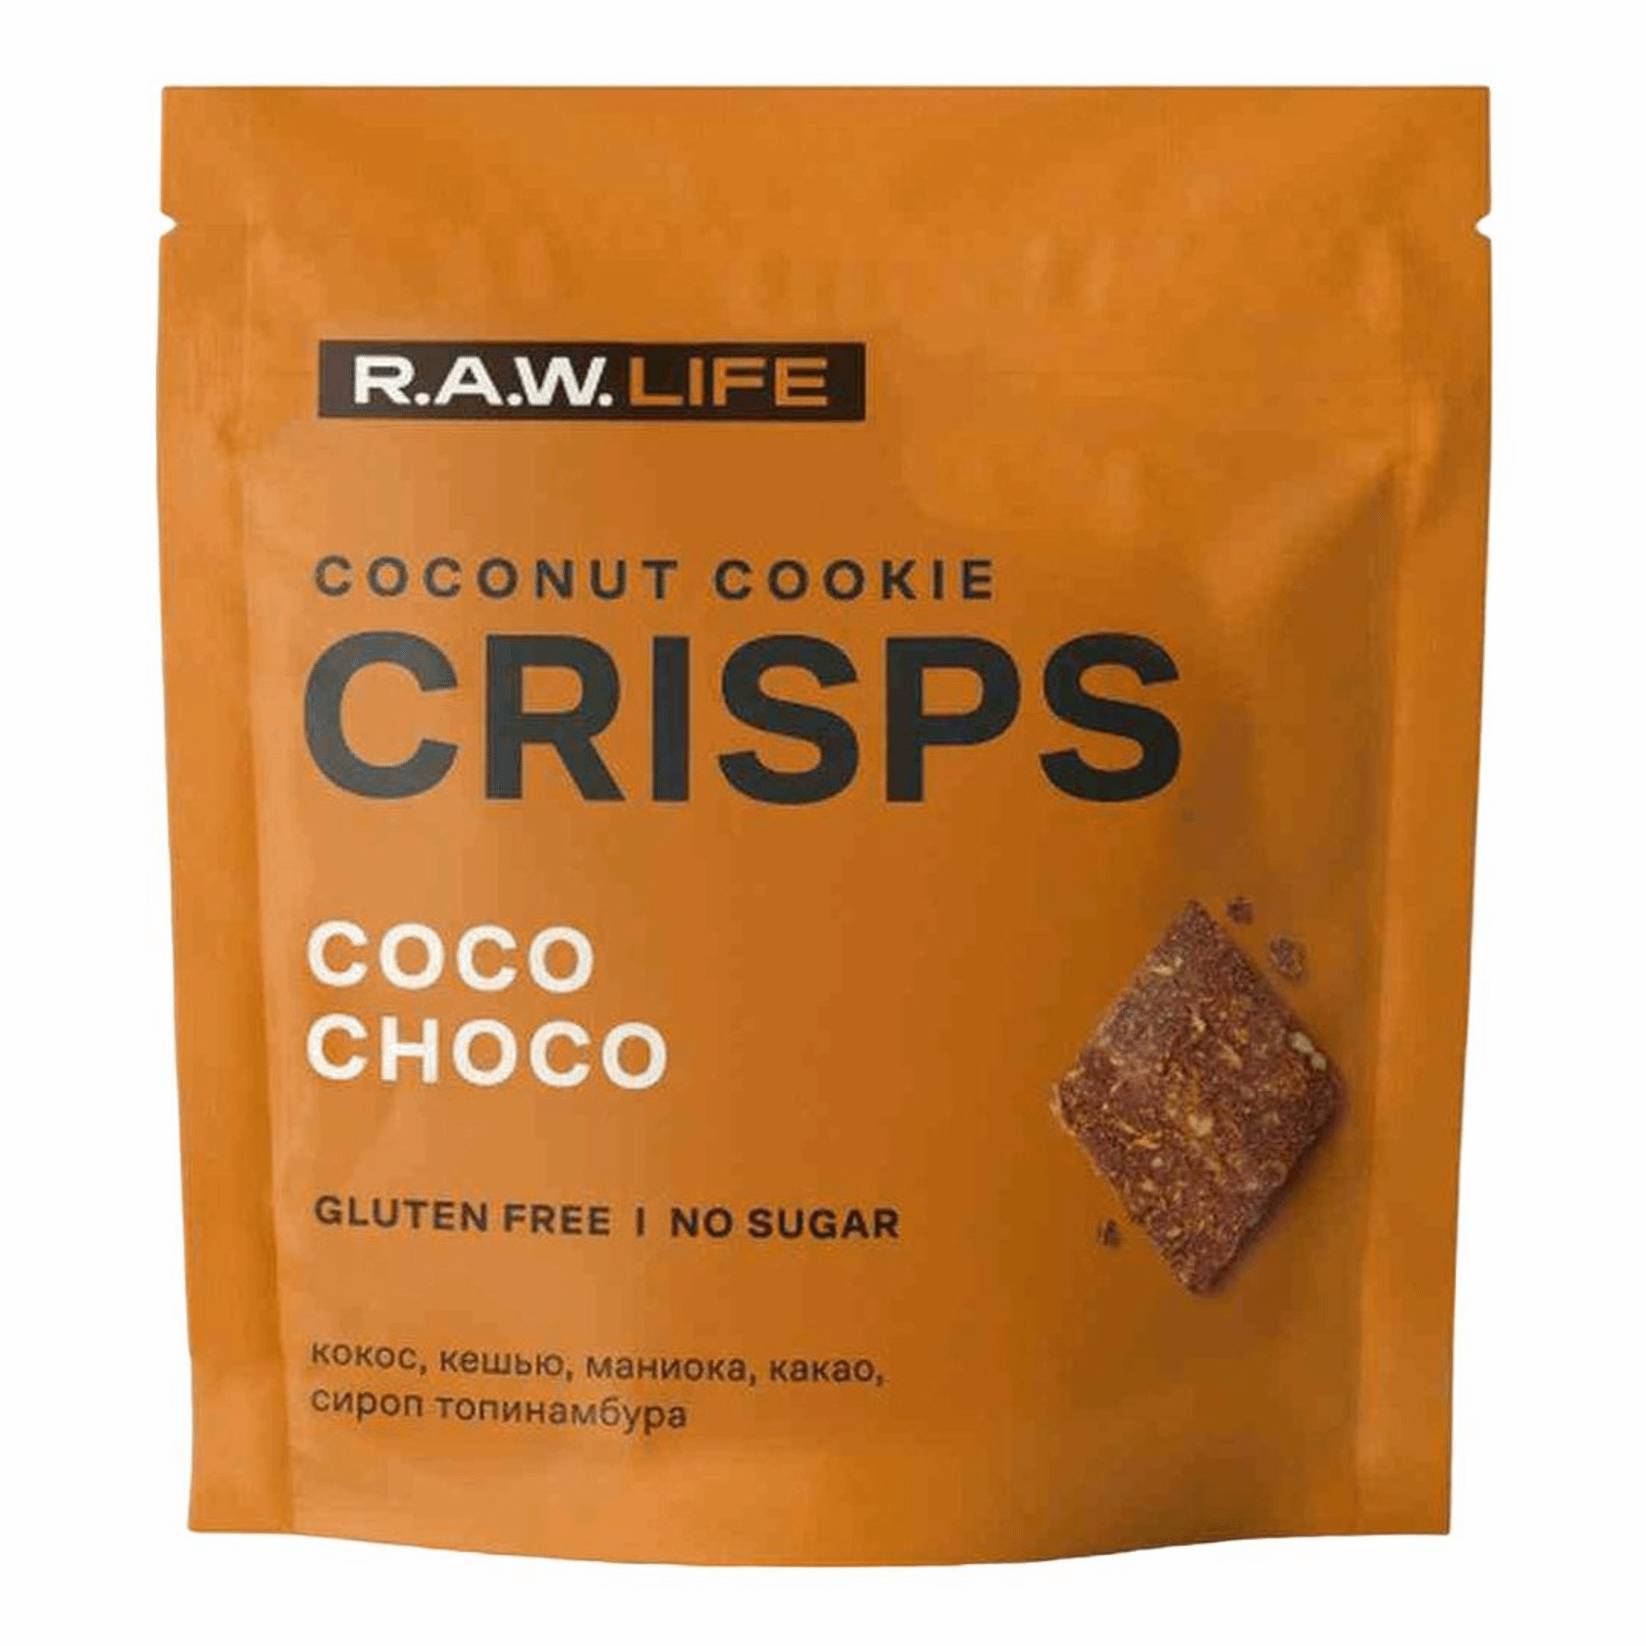 Печенье R.A.W. LIFE Crisps кокос-шоколад, 35 г кешью metro chef сушеный 500 гр